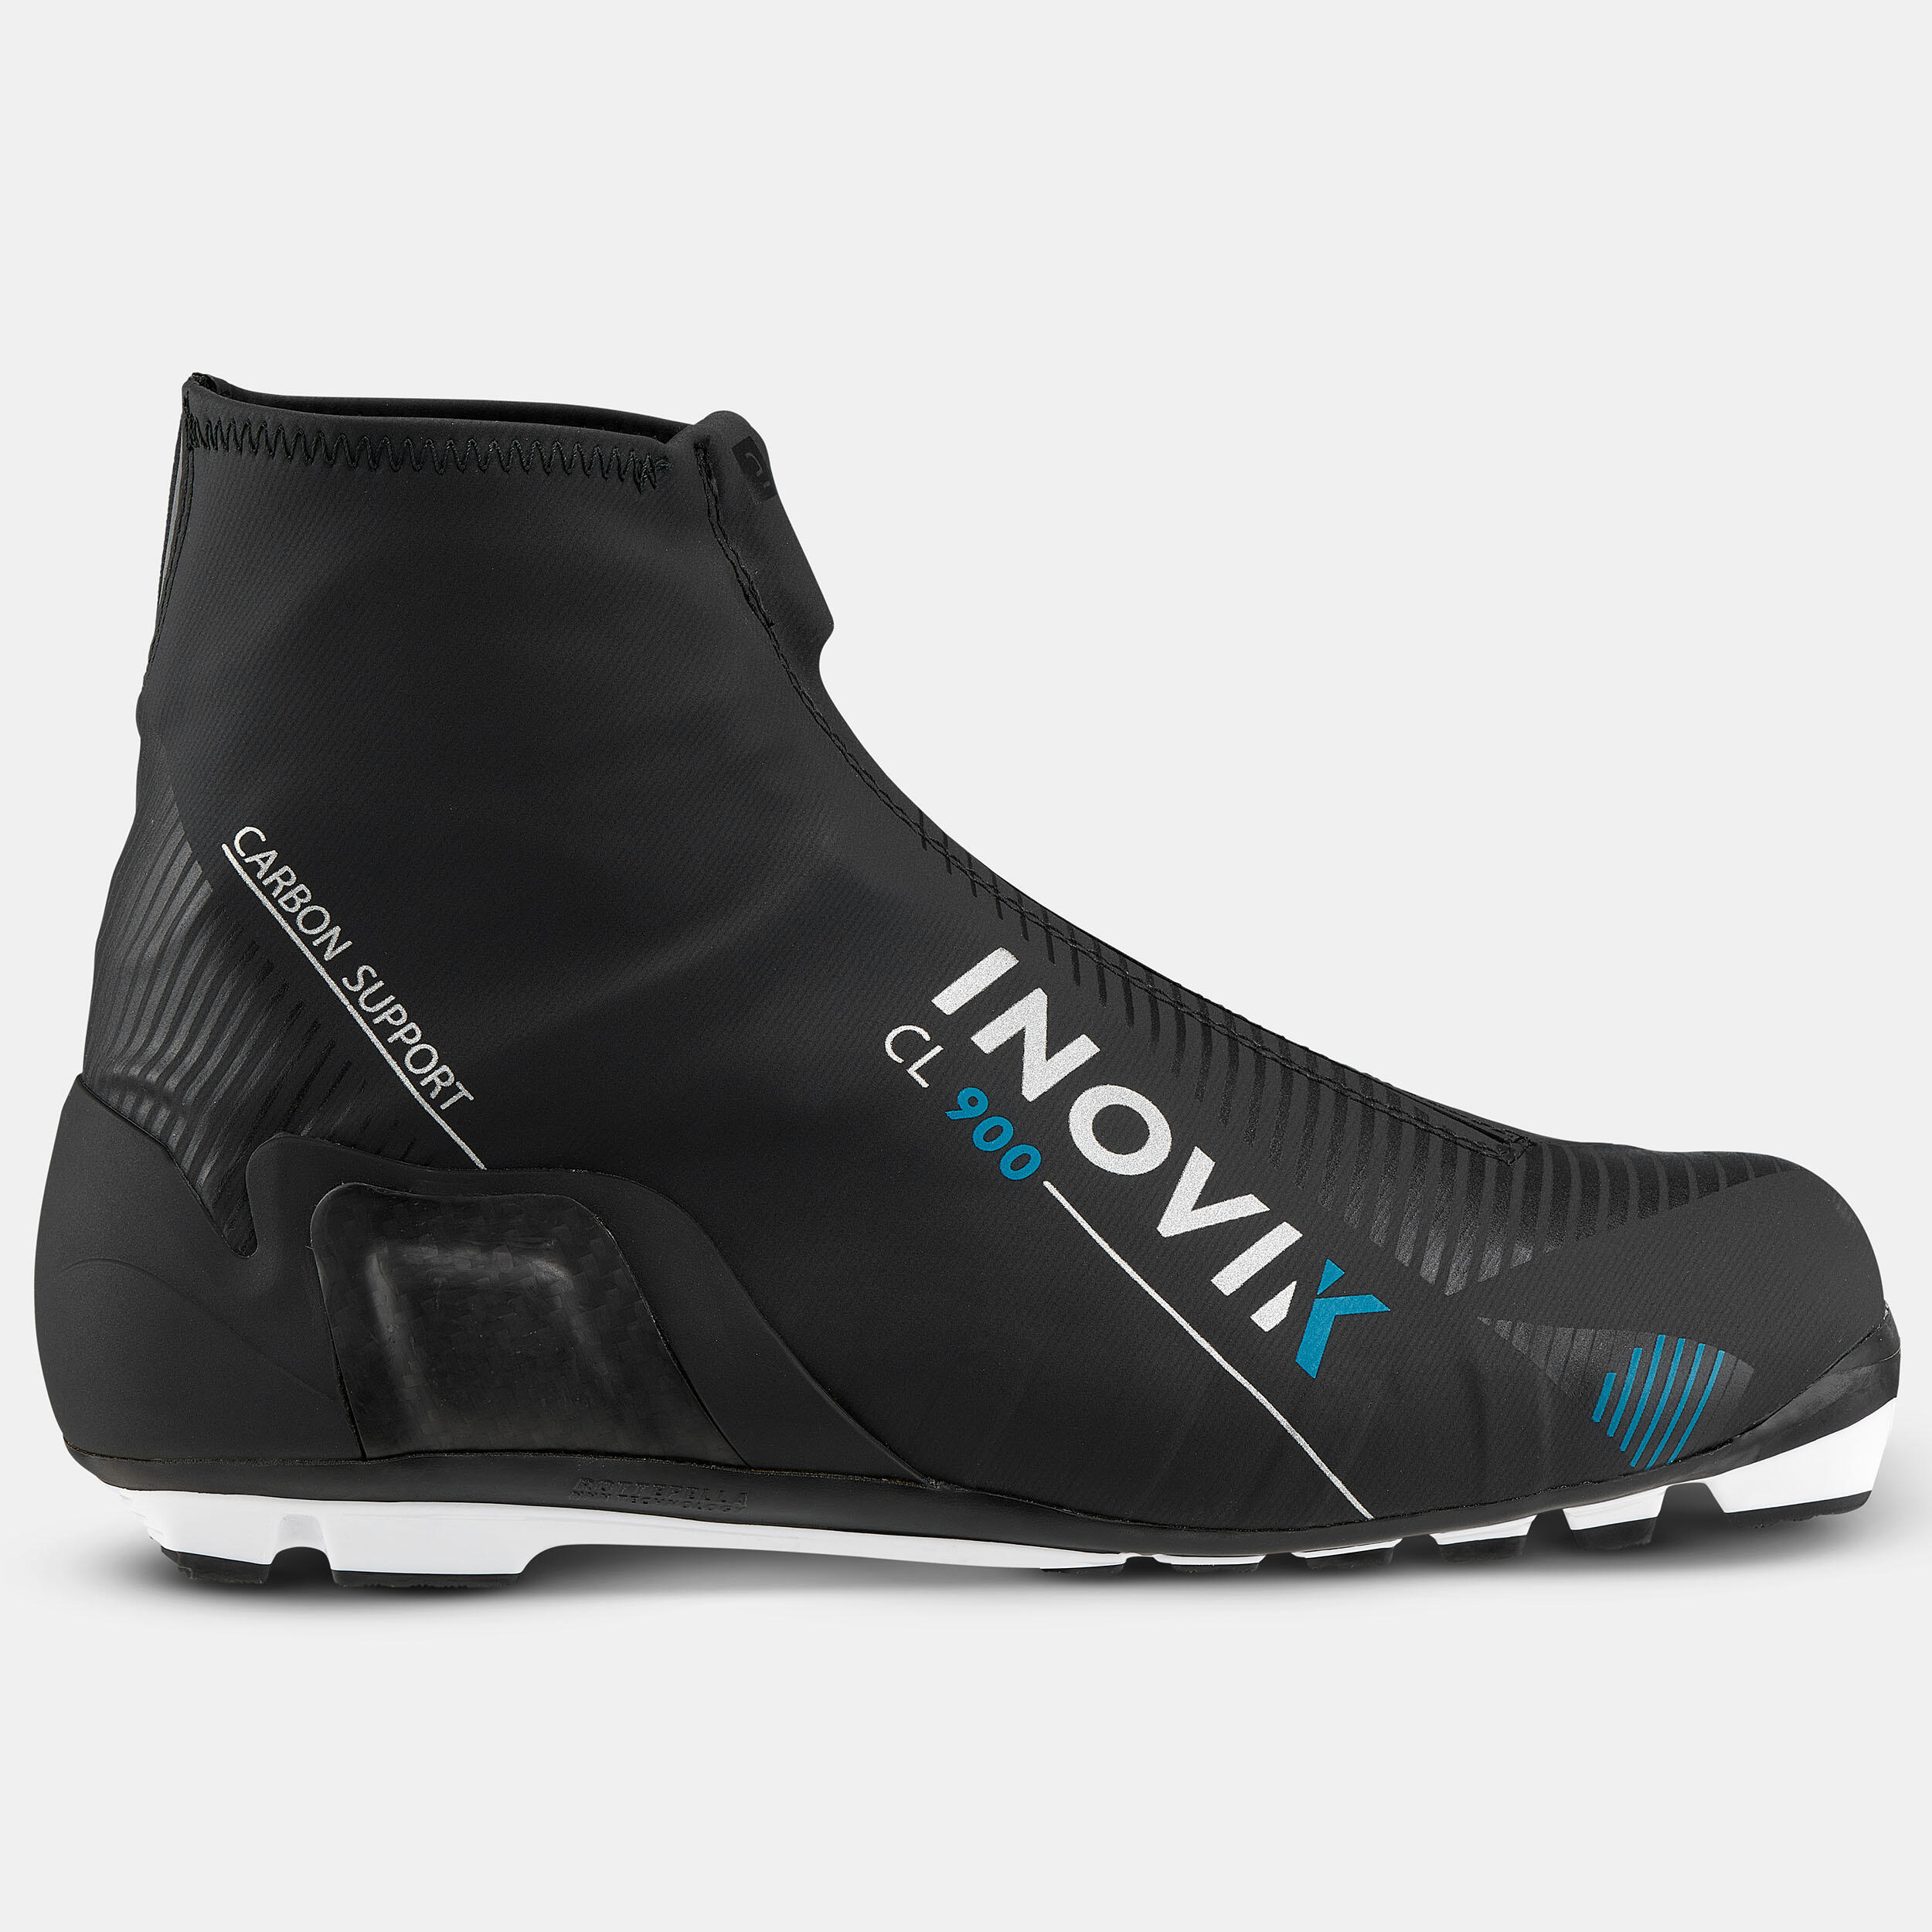 Bottes de ski de fond classique hommes – XC S 900 noir - INOVIK